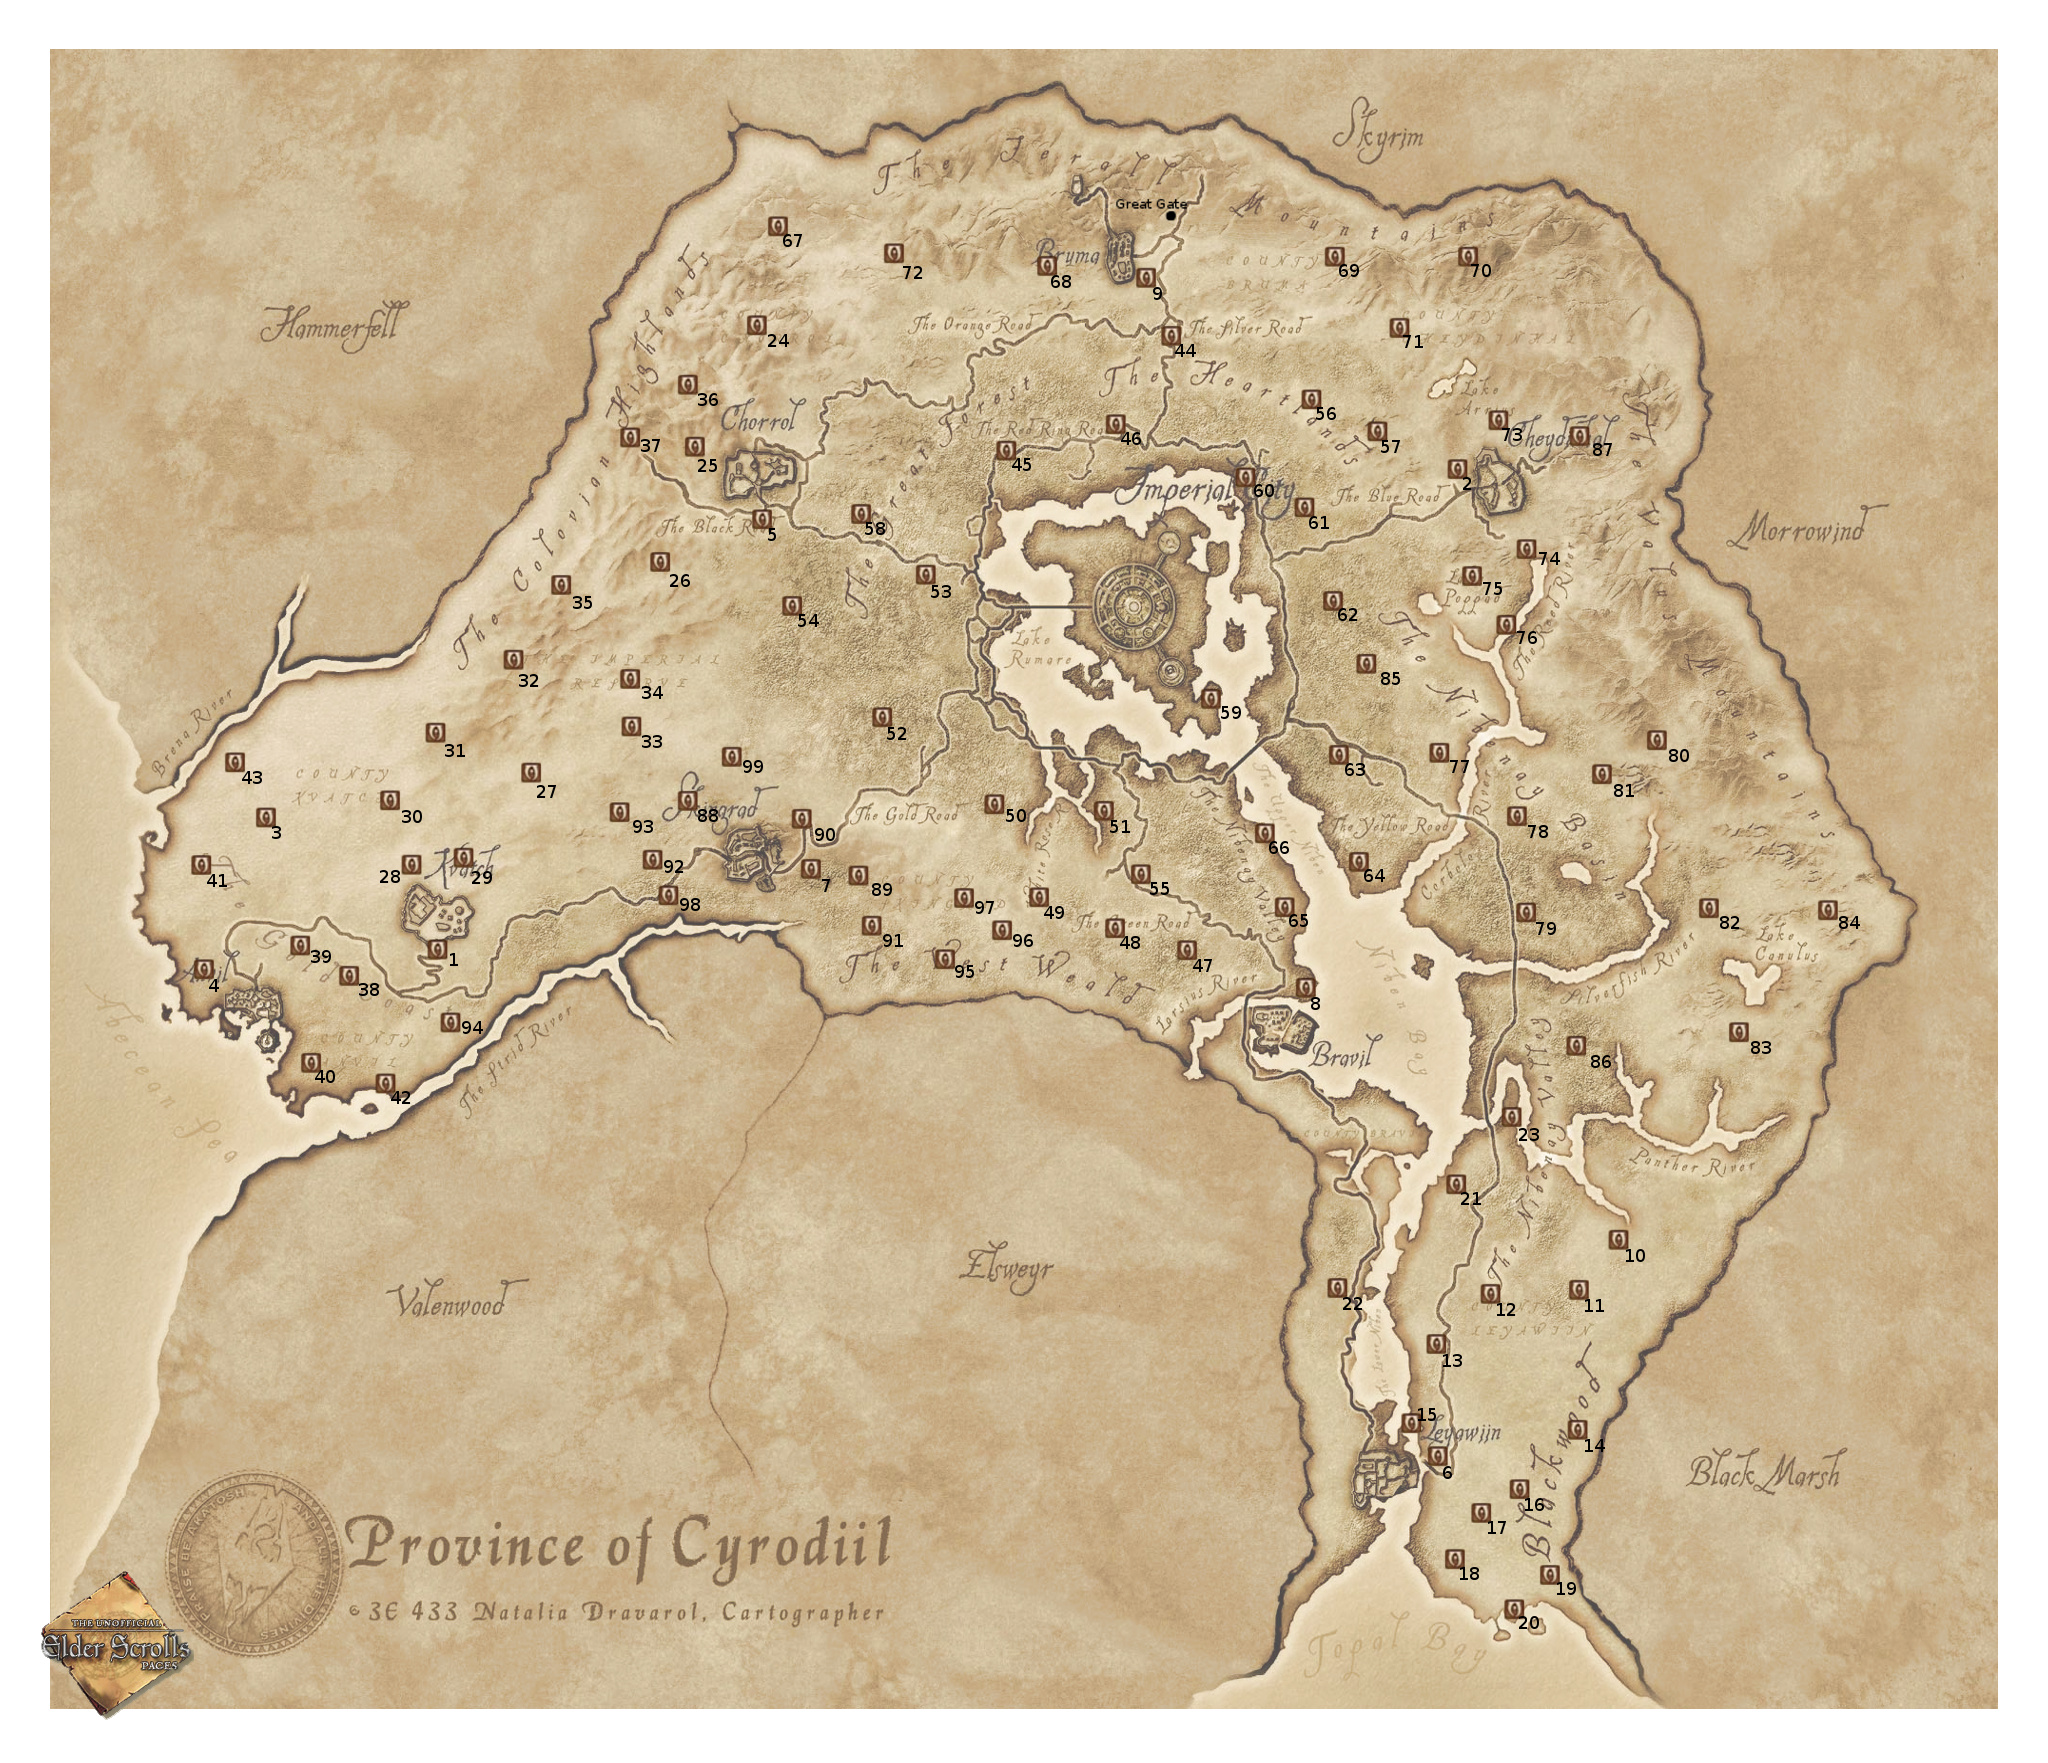 General 2048x1763 The Elder Scrolls IV: Oblivion map video games